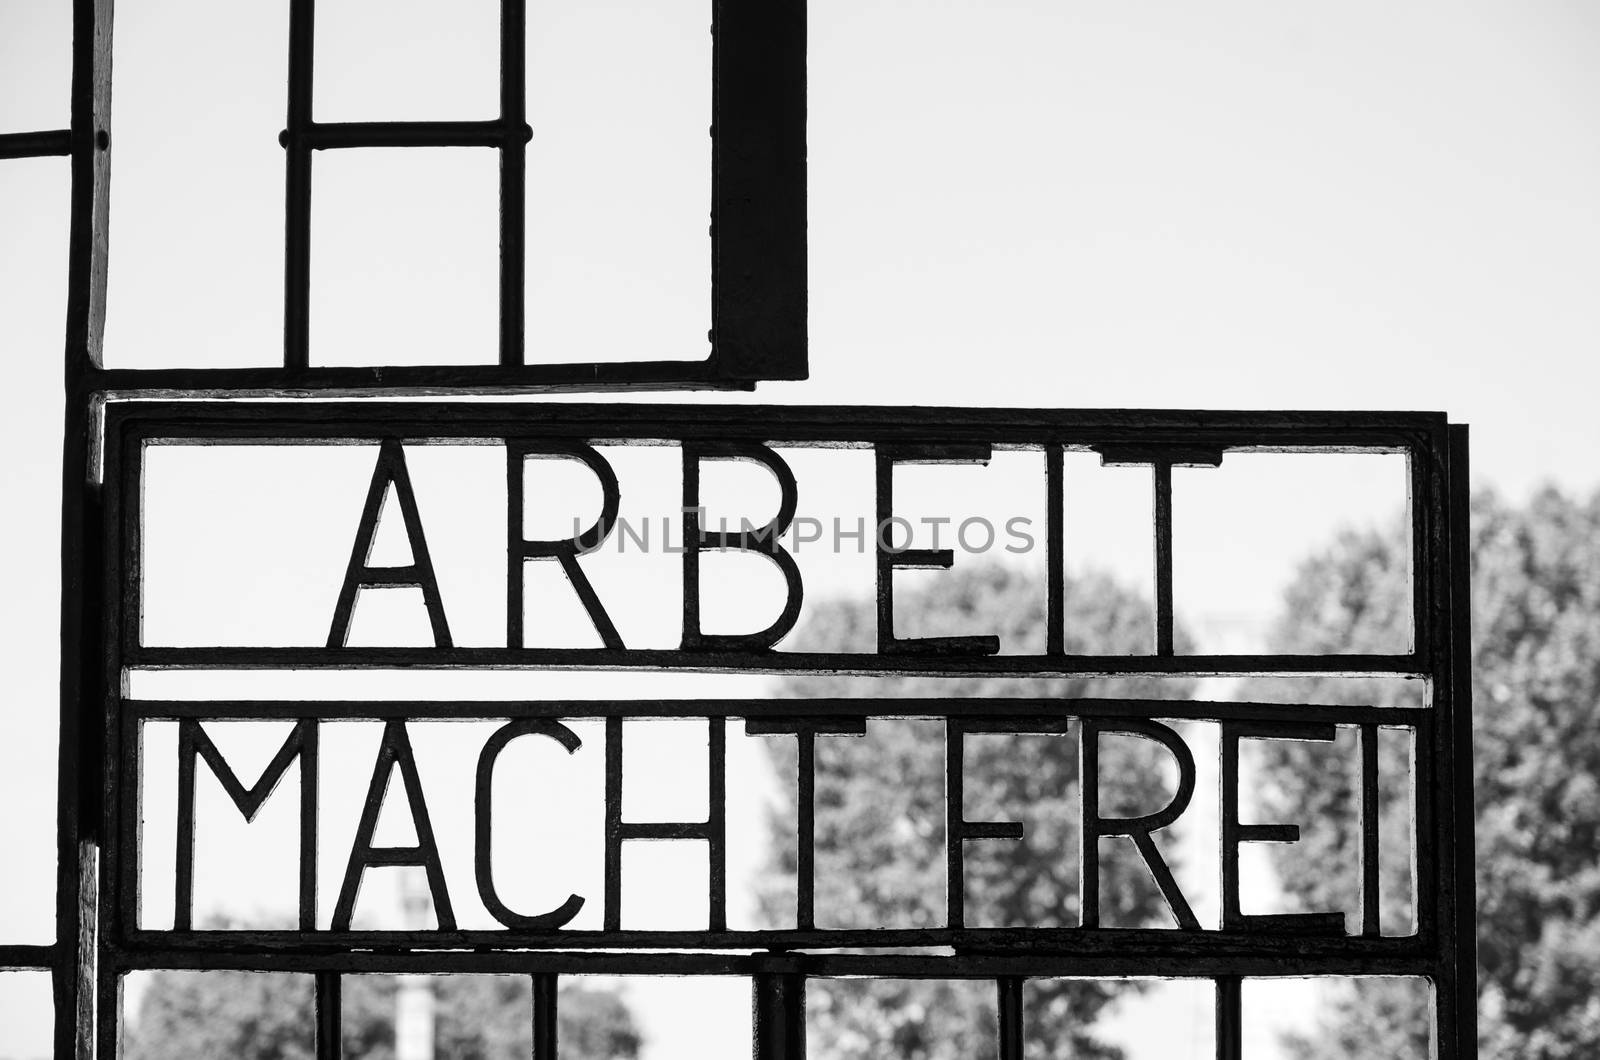 Arbeit macht frei, Sachsenhausen concentration camp in Berlin by mauricallari